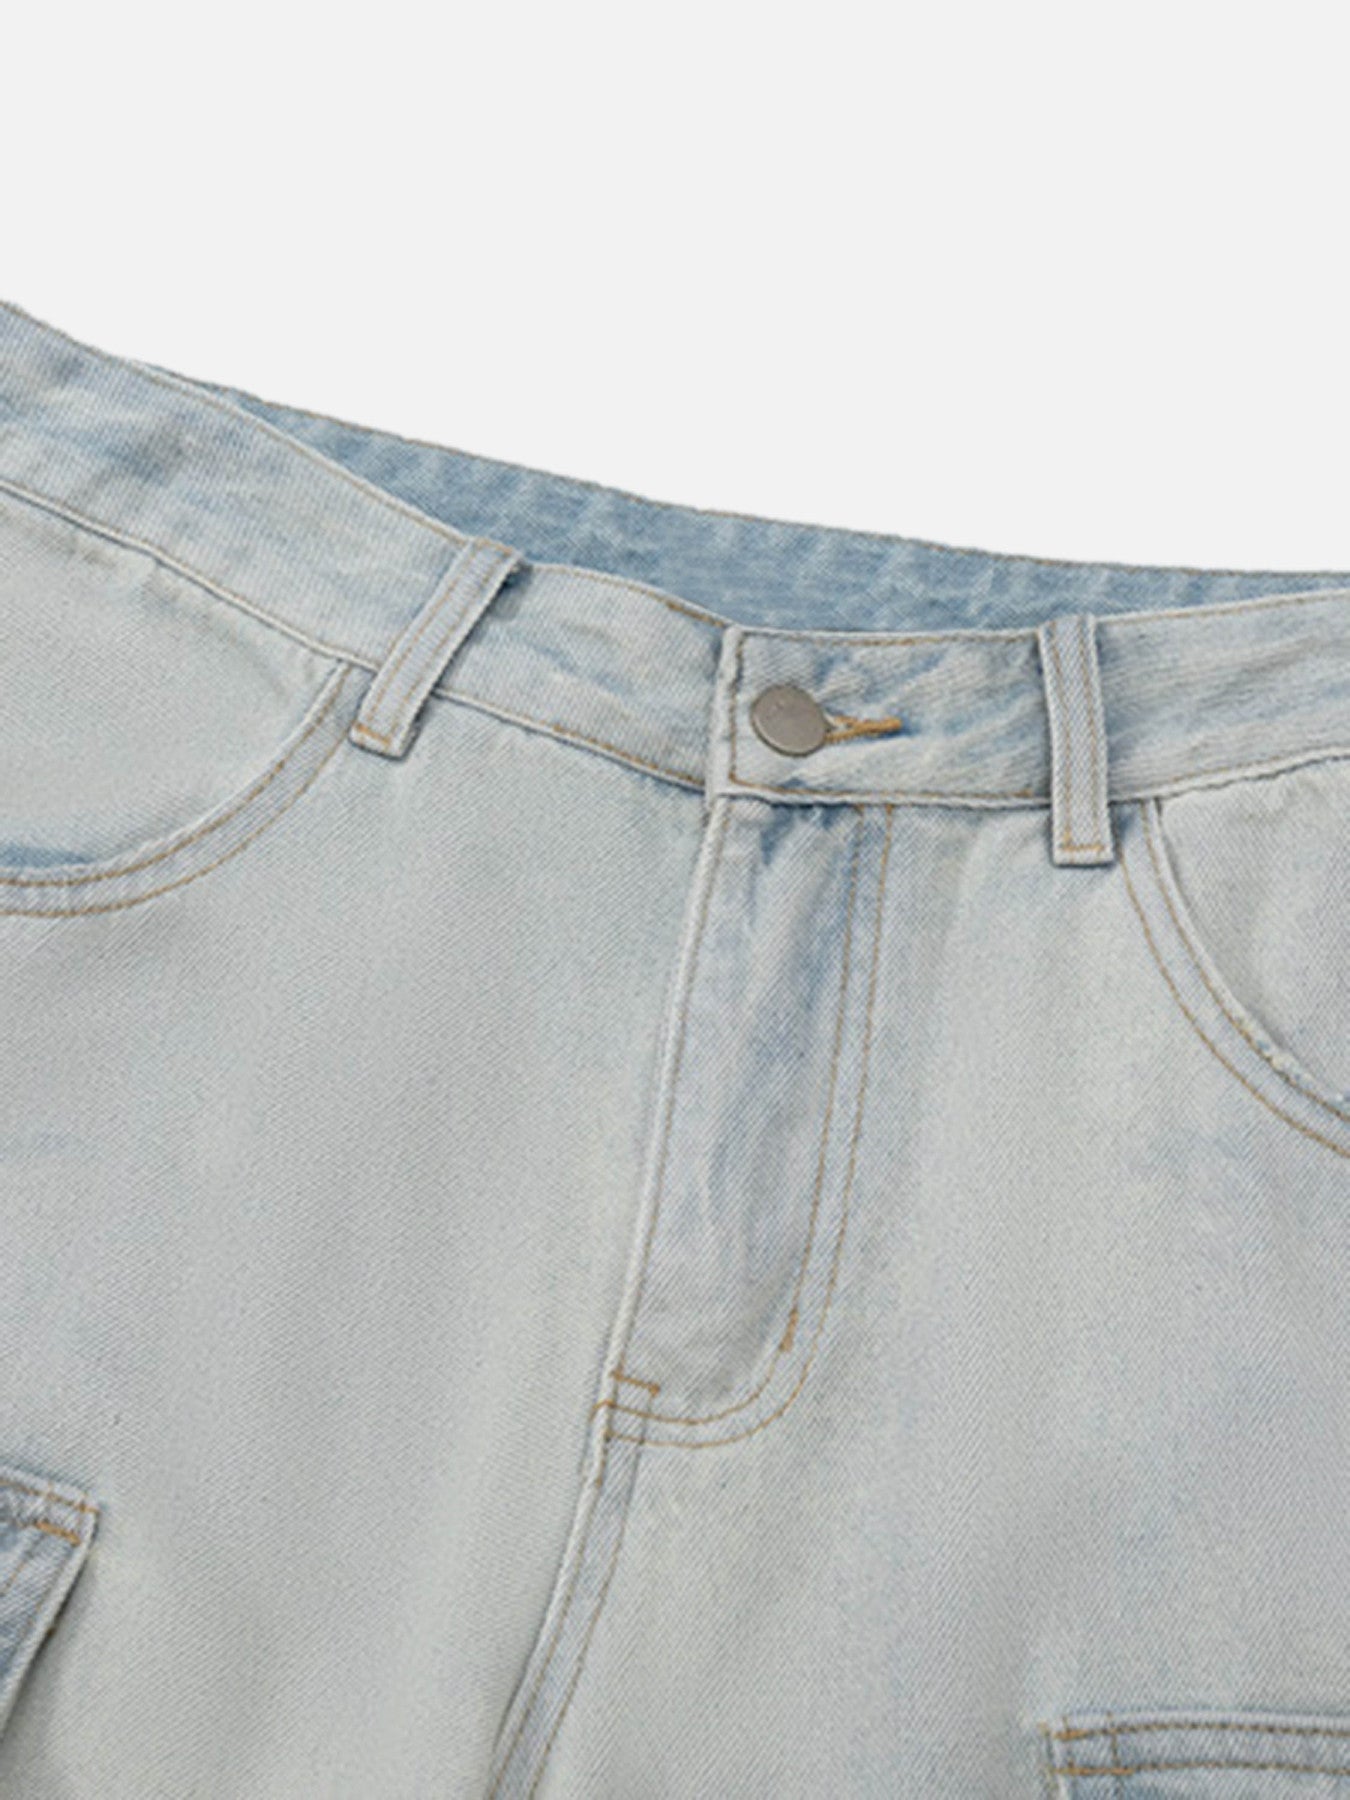 Thesupermade Vintage Washed Multi-pocket Work Jeans